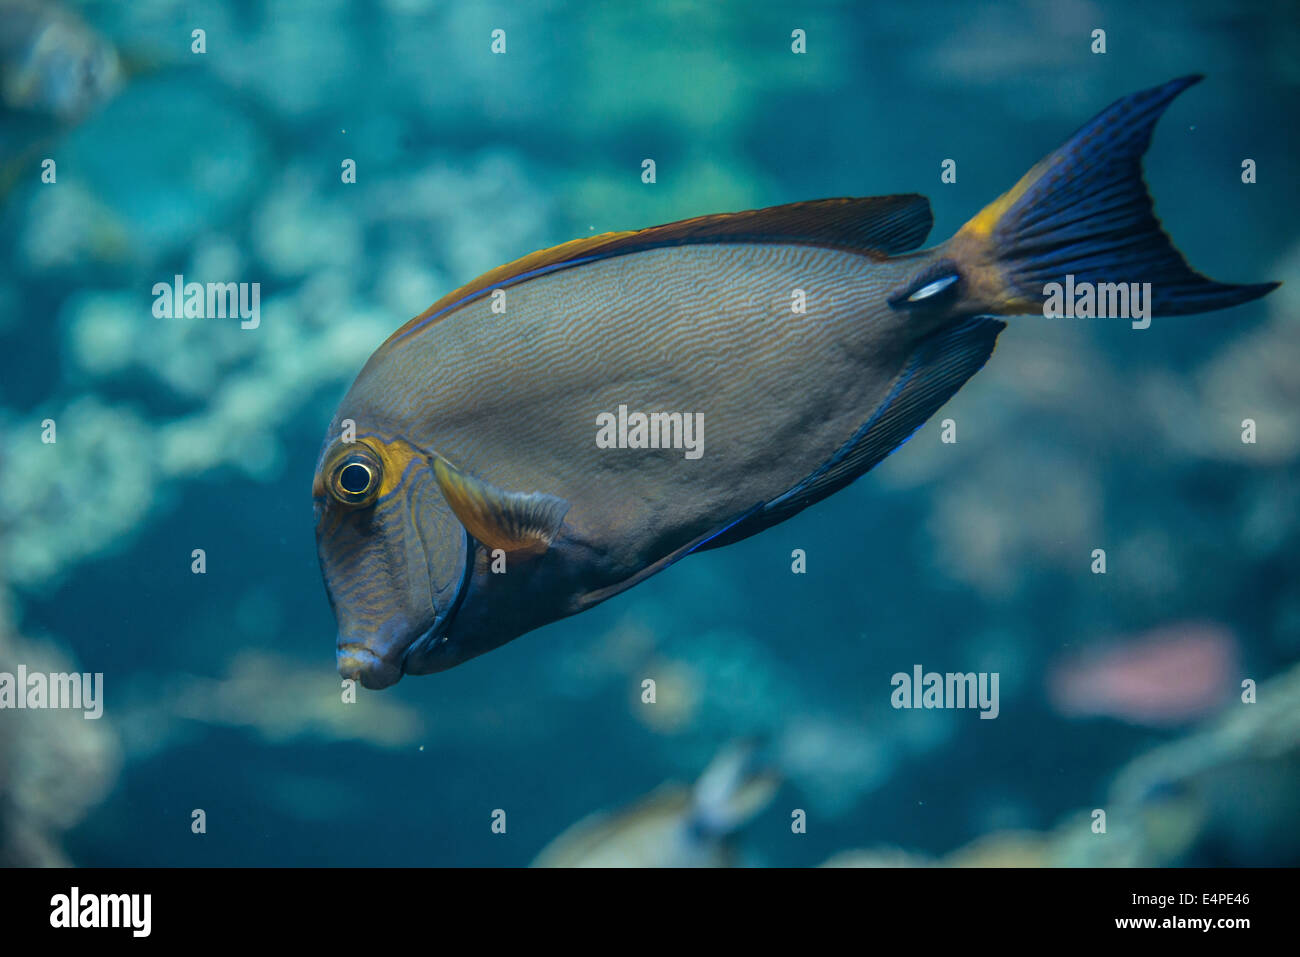 Eyestripe Surgeonfish (Acanthurus dussumieri) Stock Photo